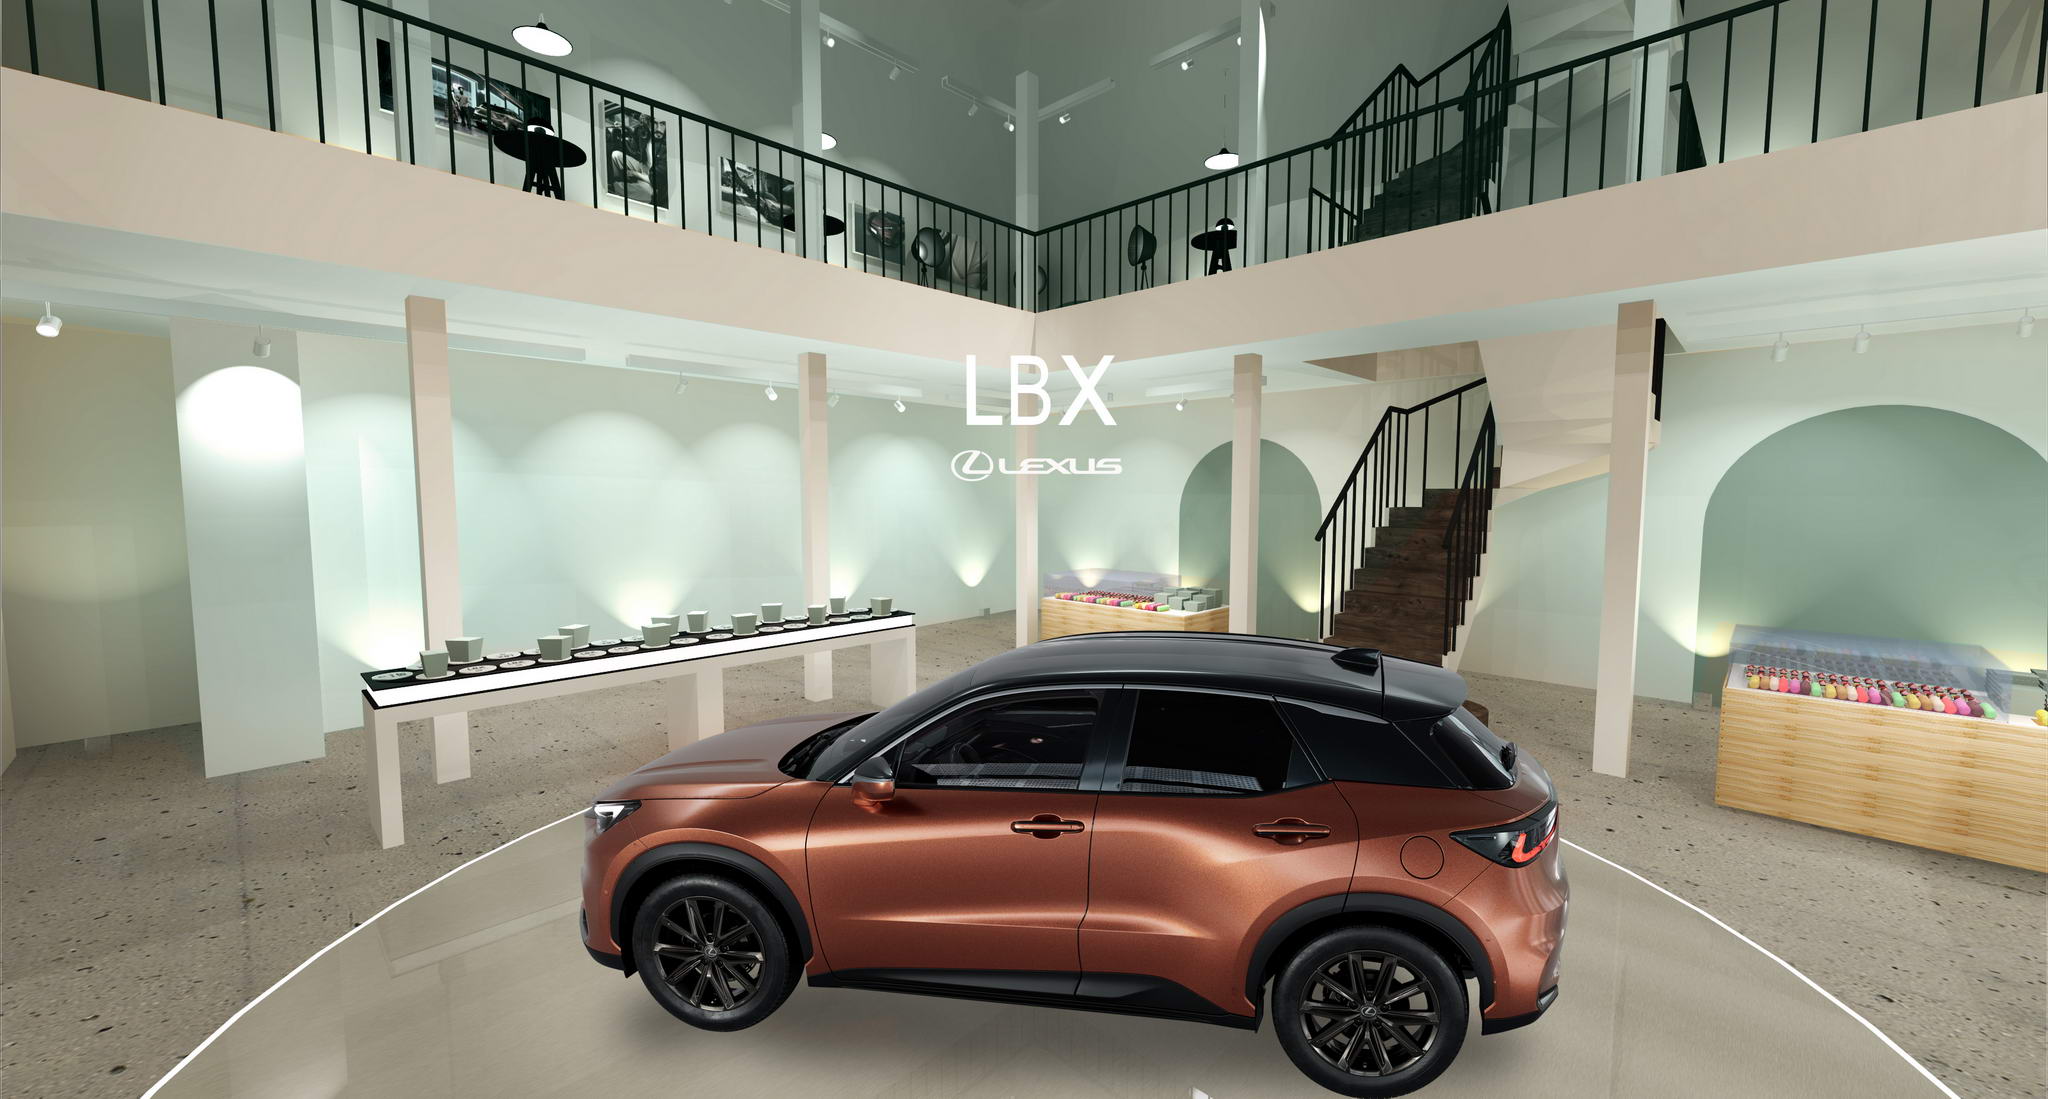 Érzékszervi Kánaán és Michelin-csillagok a Lexus LBX pop-up shown